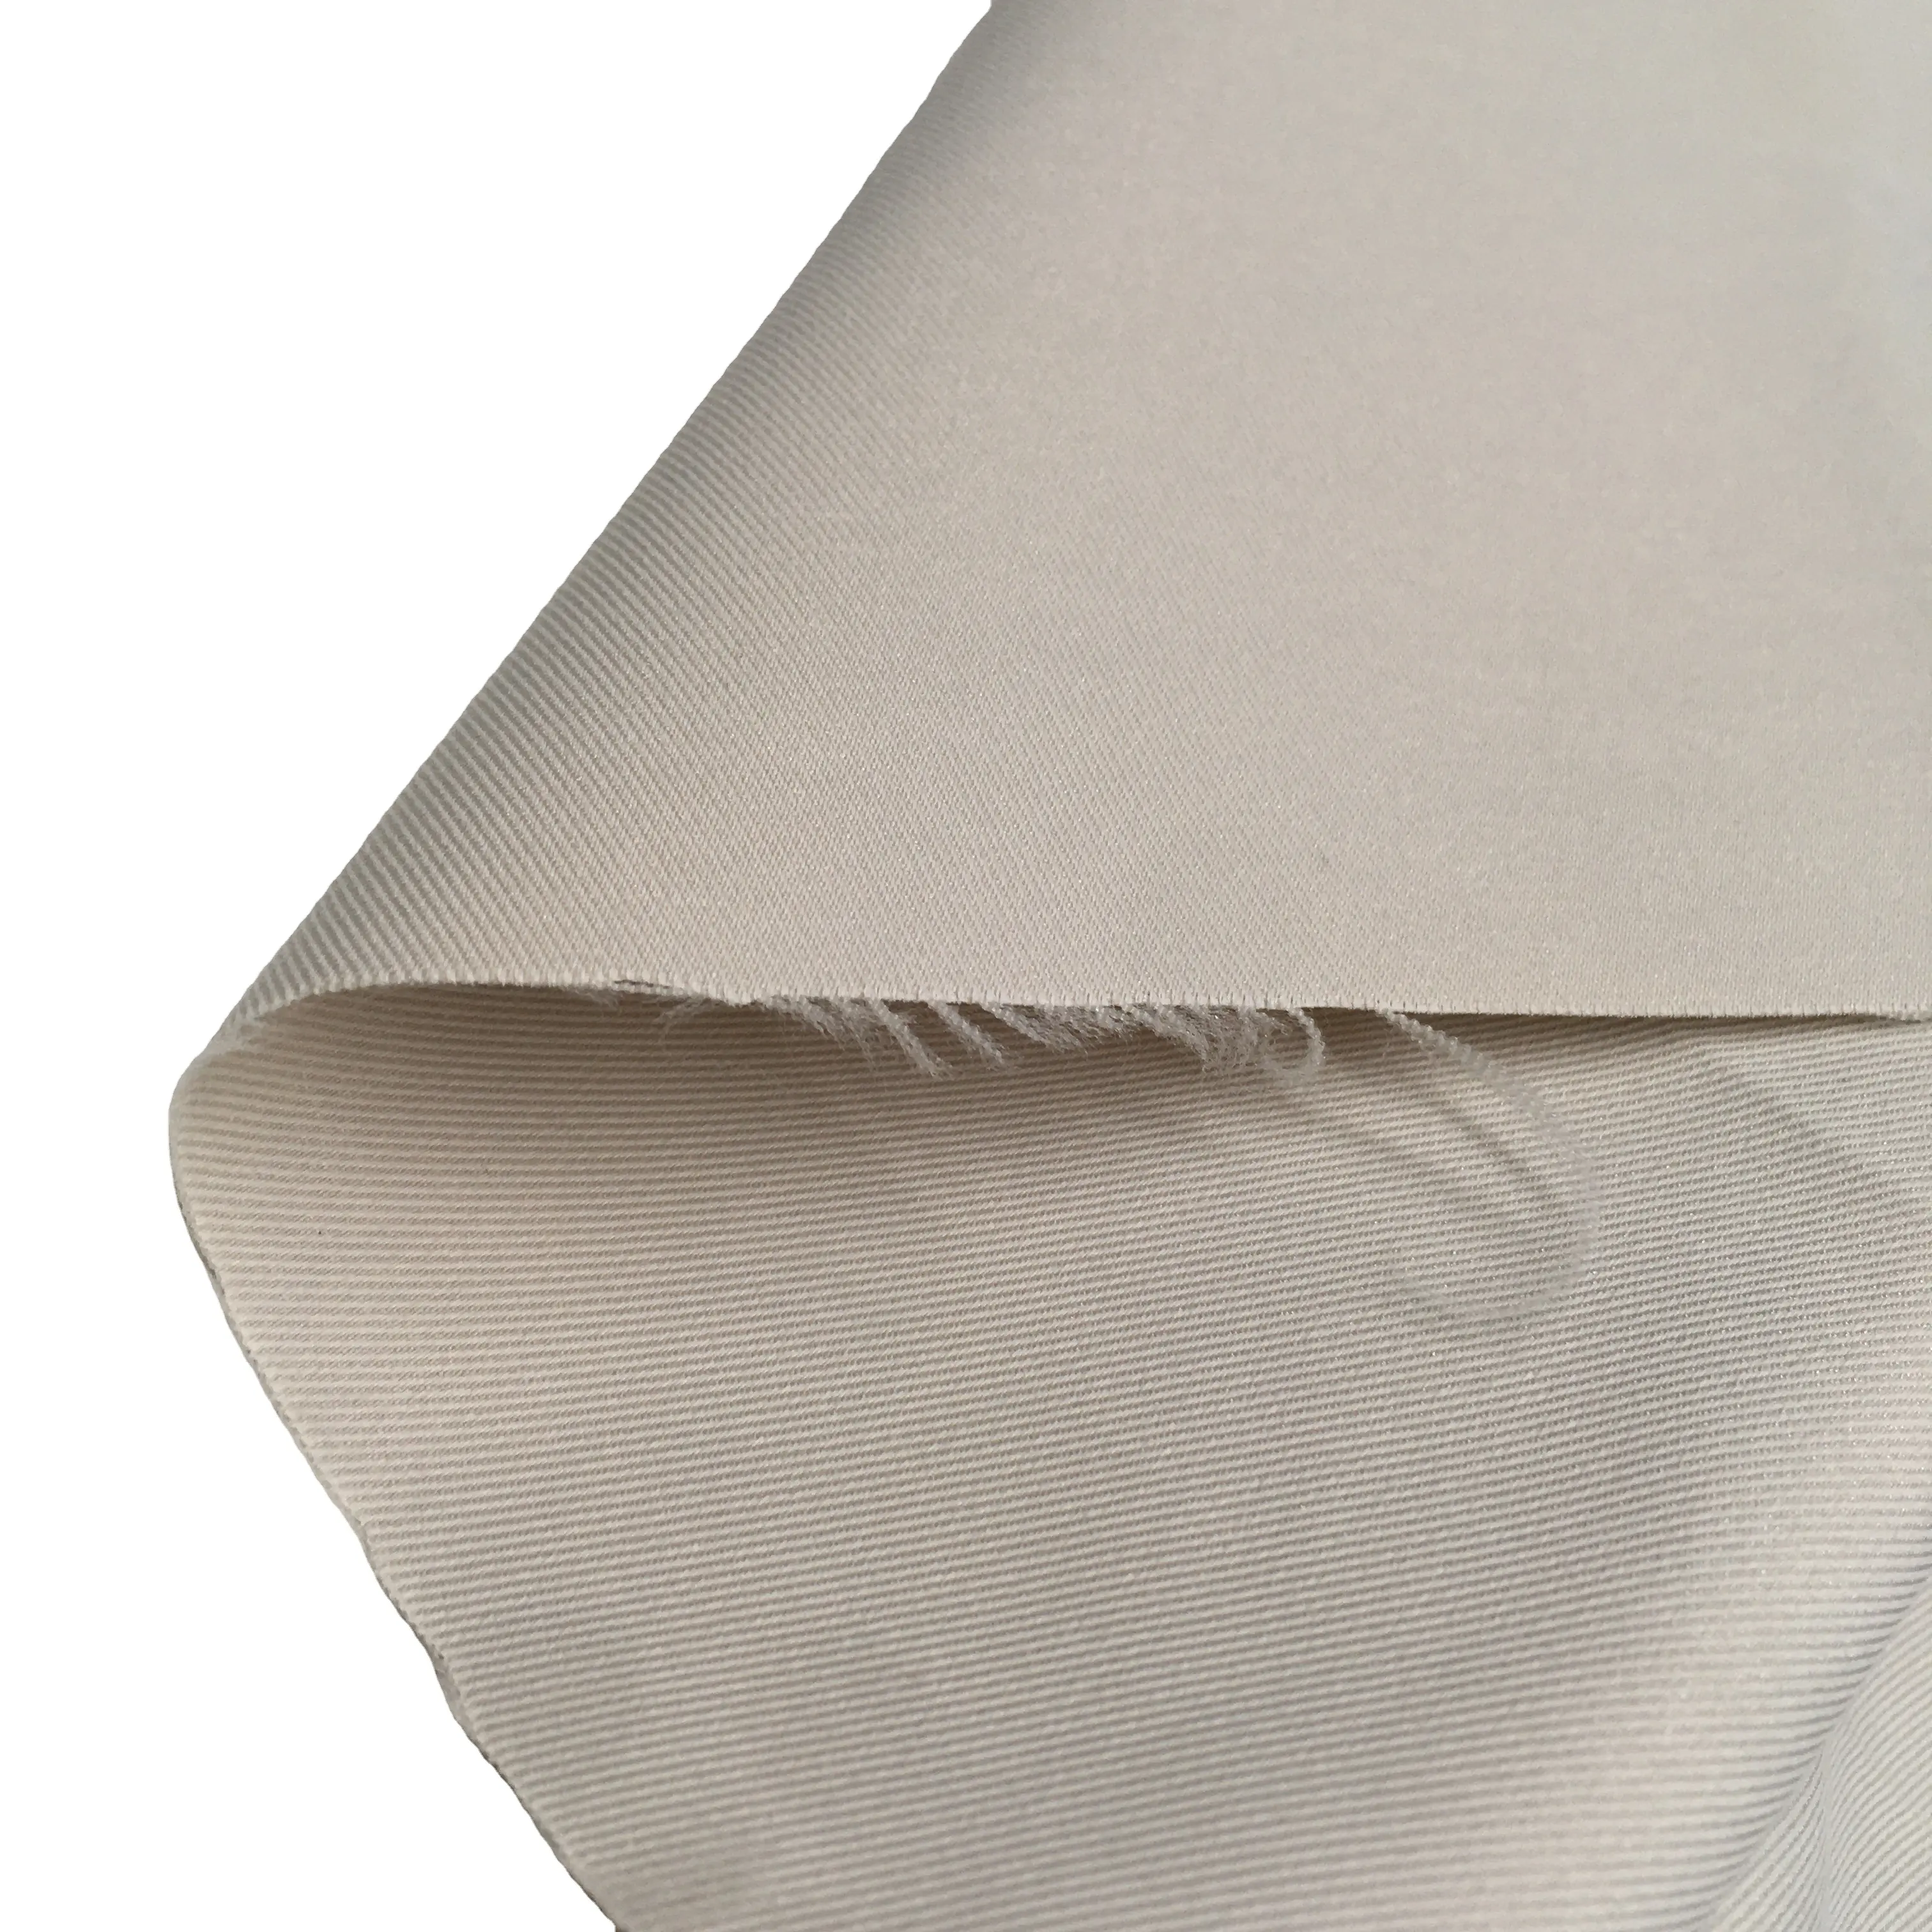 Wujiang Zware Polyester Inslag Elastische Aty 160DX150D T400 1/3 Twill Taslon Stof Voor Outdoor Wind Jas